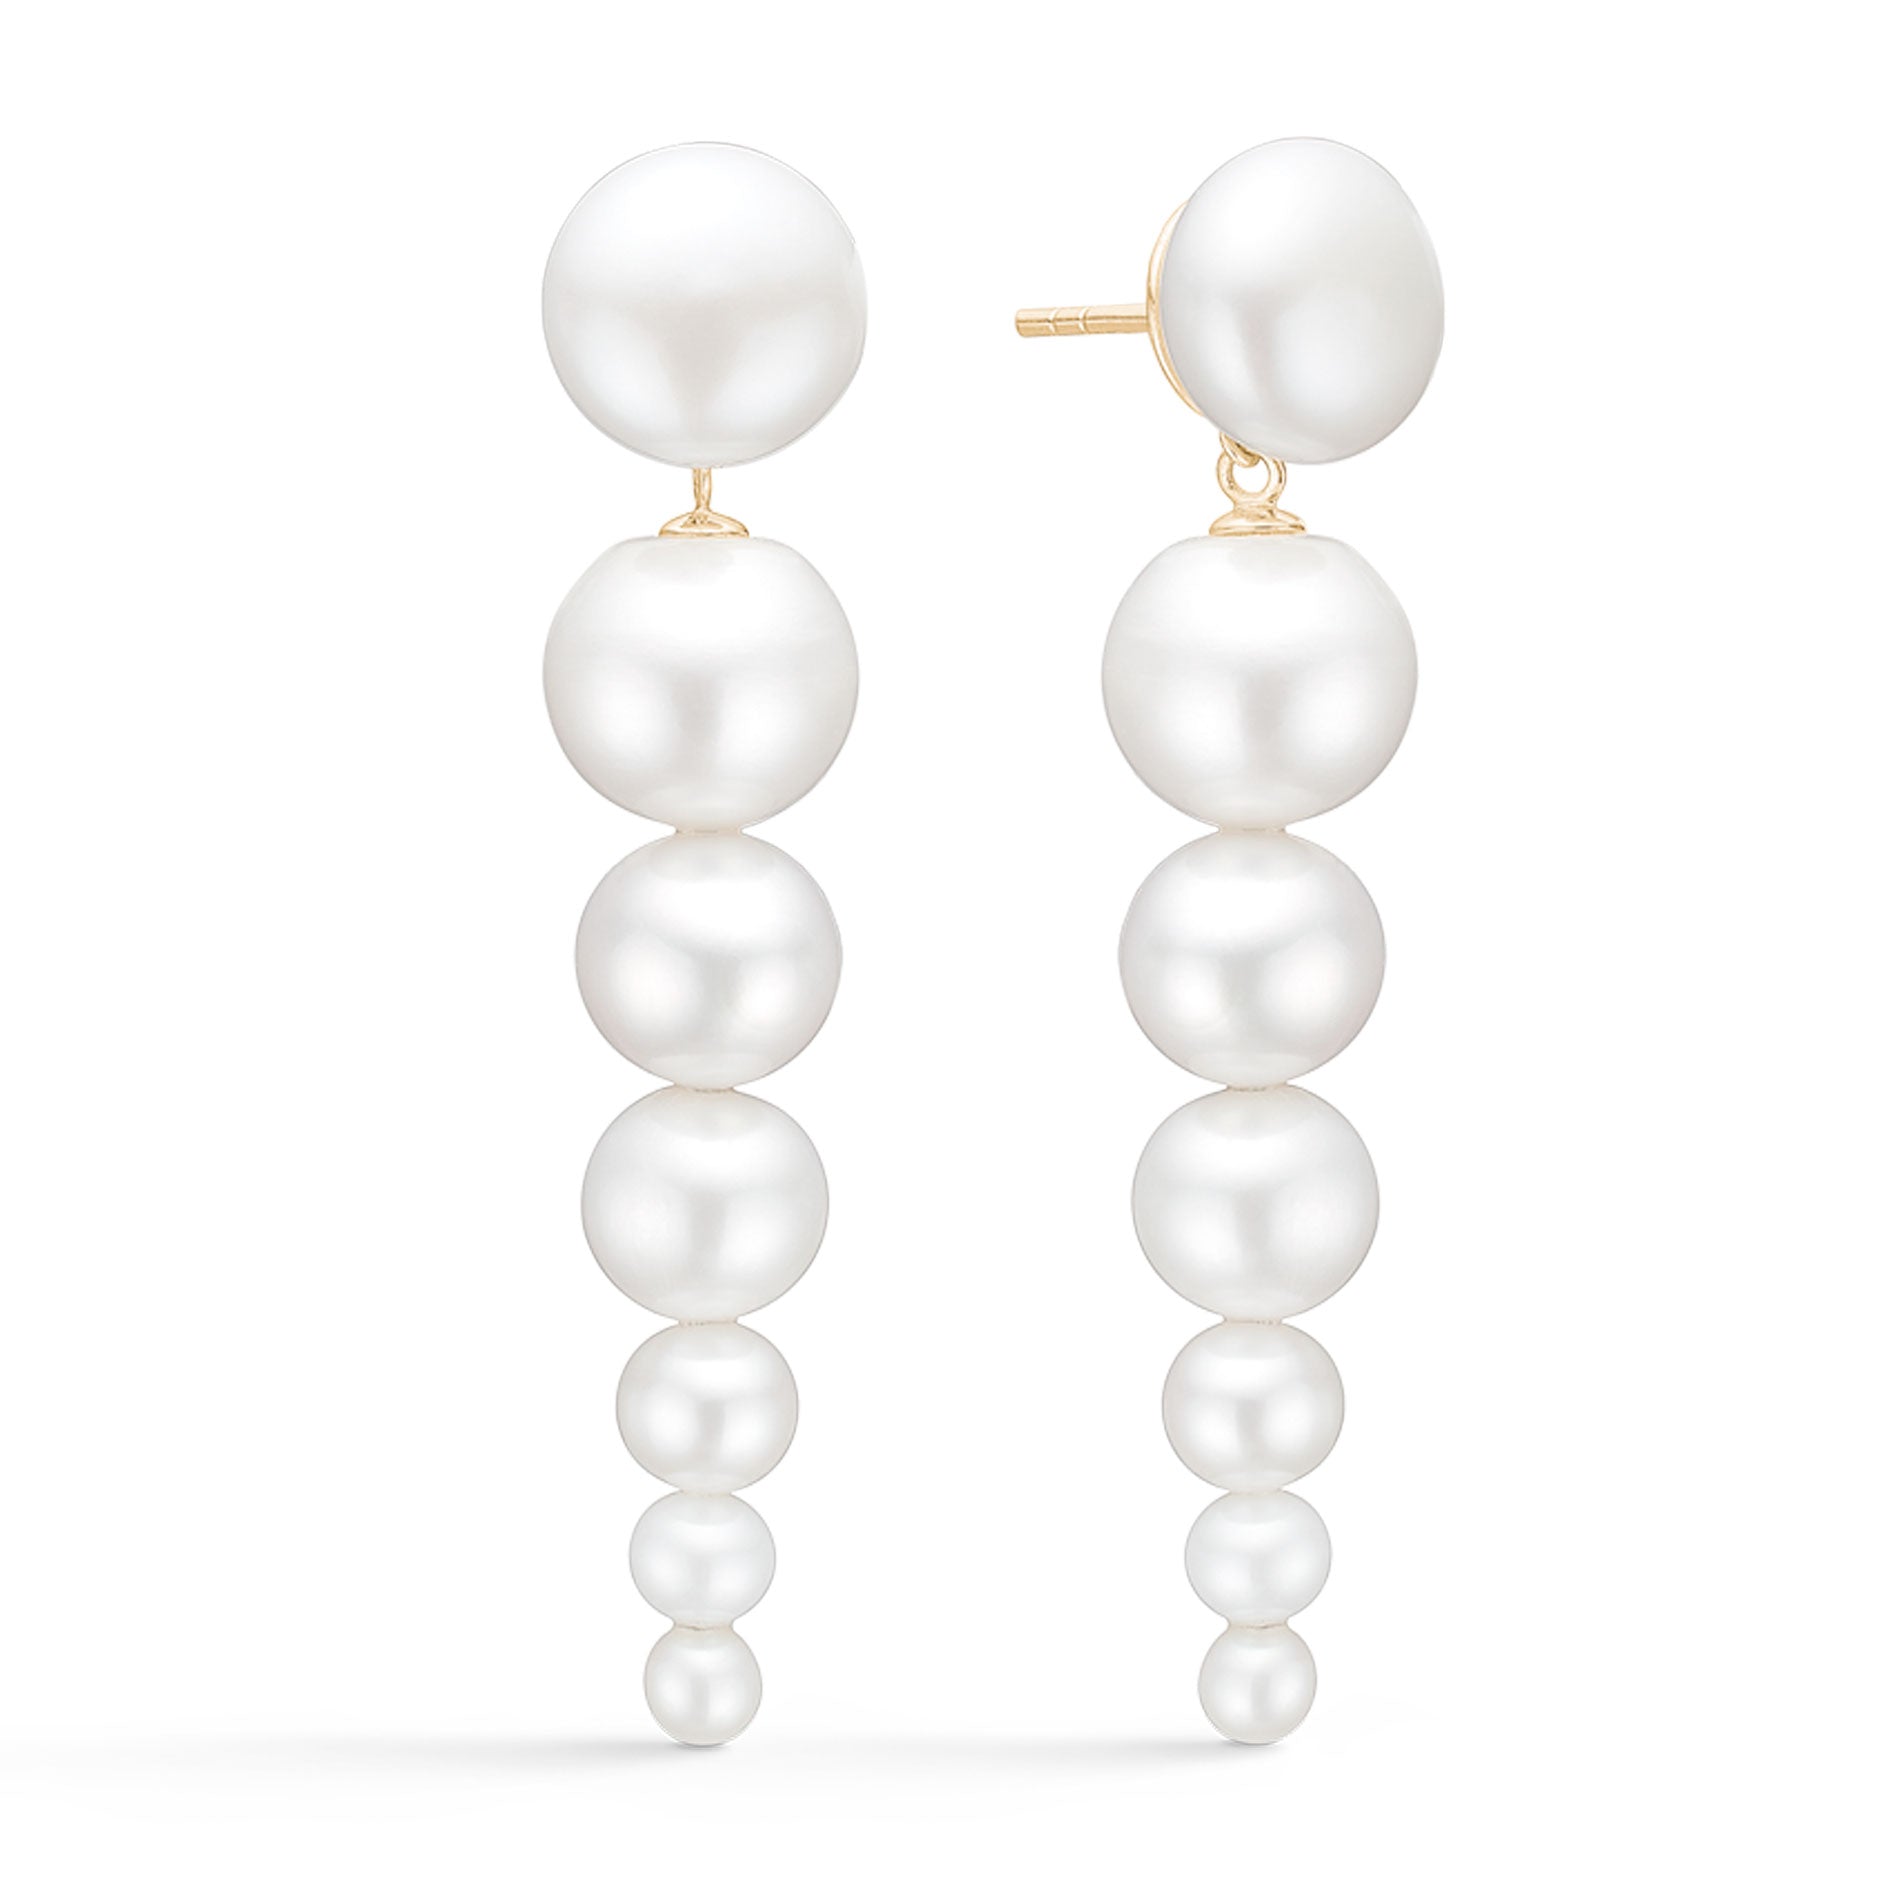 Julie Sandlau øreringe i 14 karat guld med perler